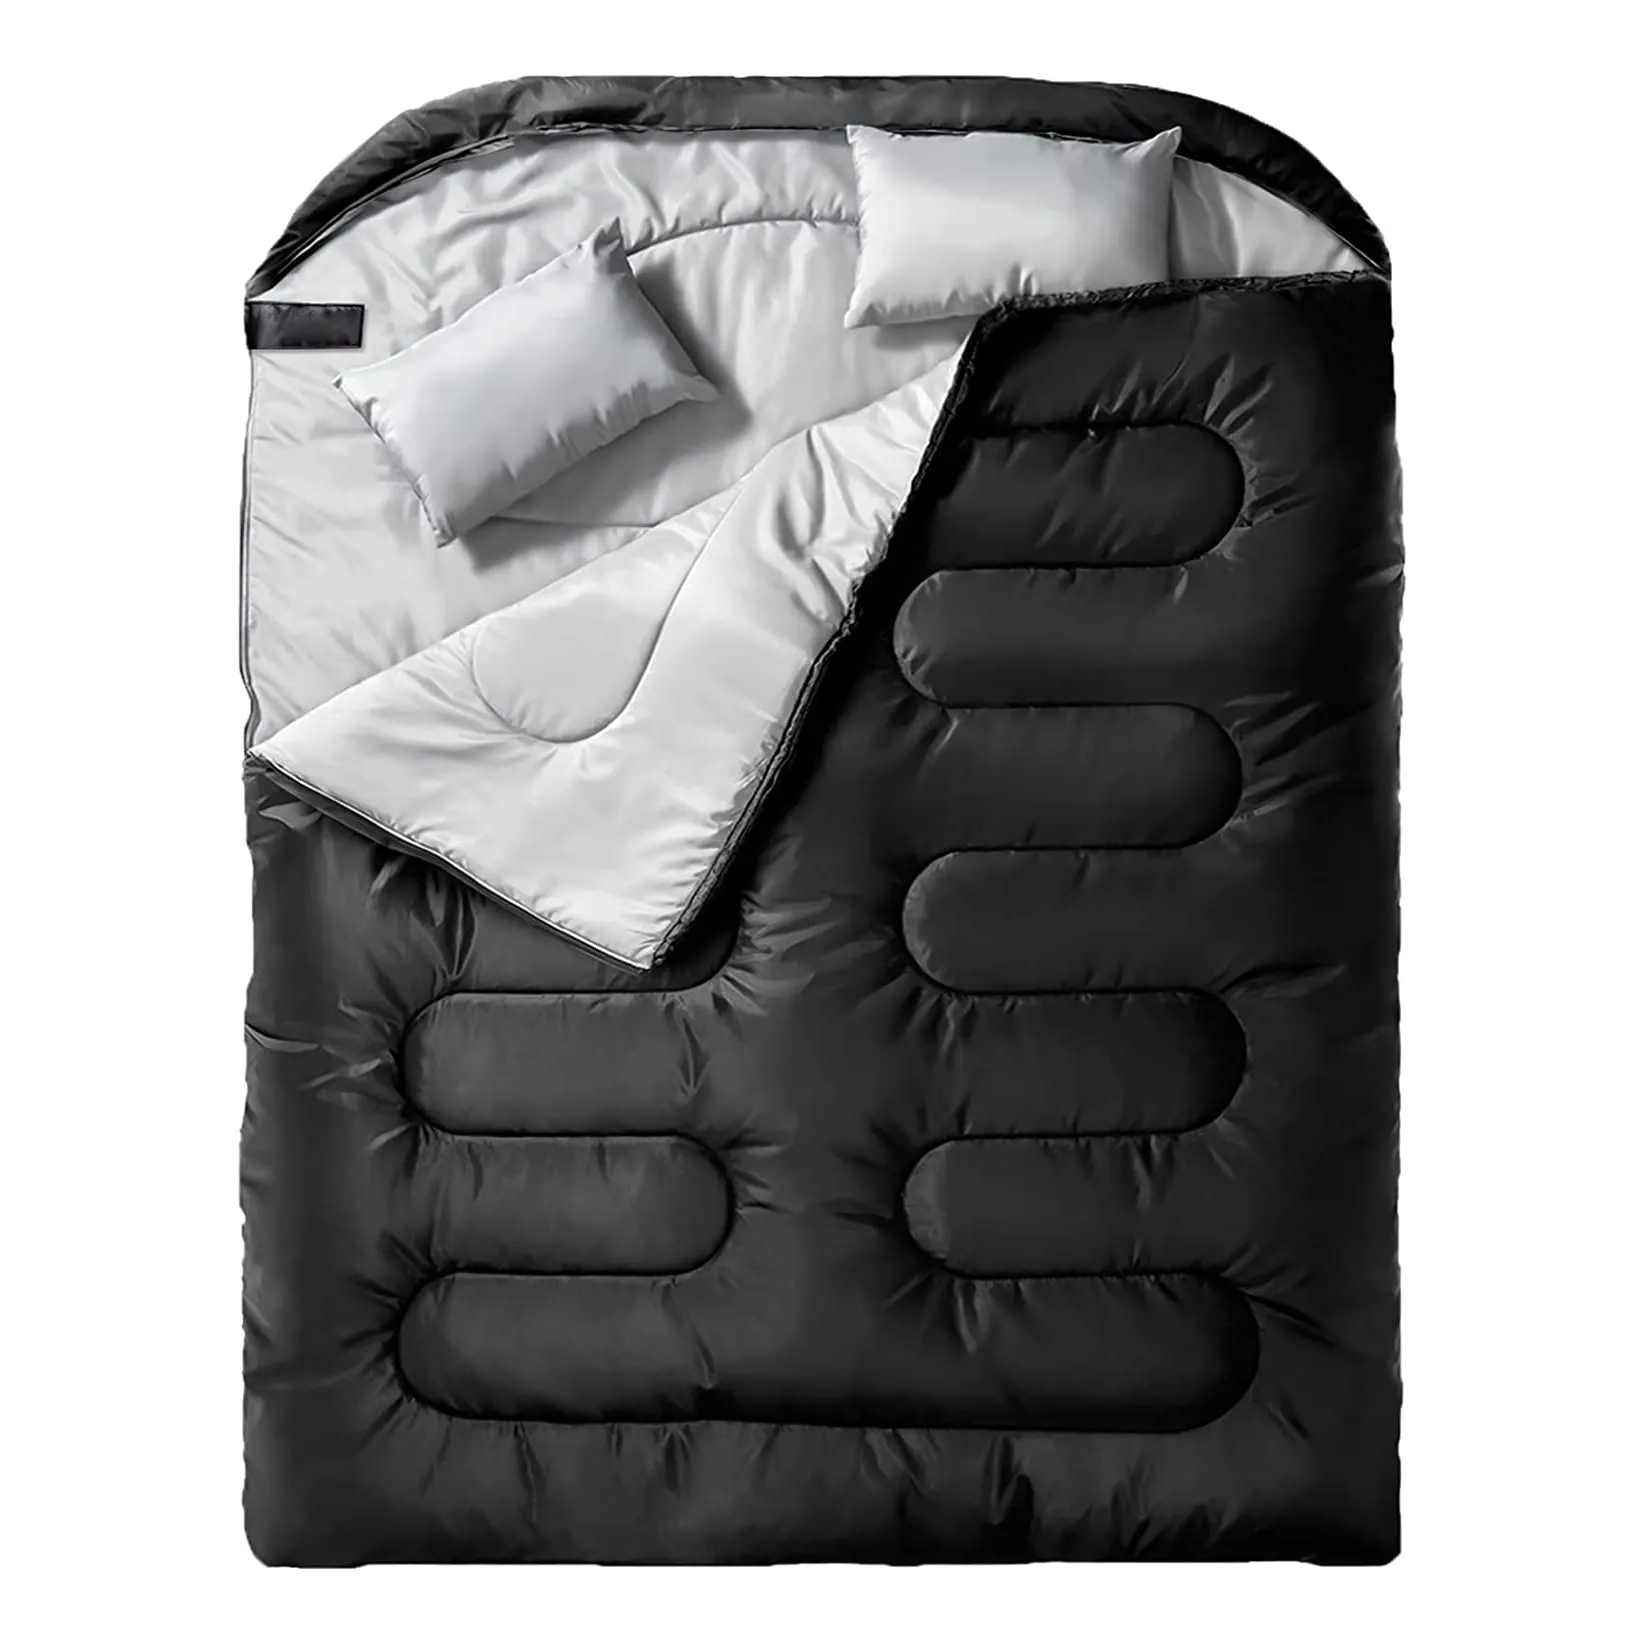 大人用ダブル寝袋枕付きメンズ、XLサイズオールシーズンキャンプハイキングバックパッキング用2人用寝袋